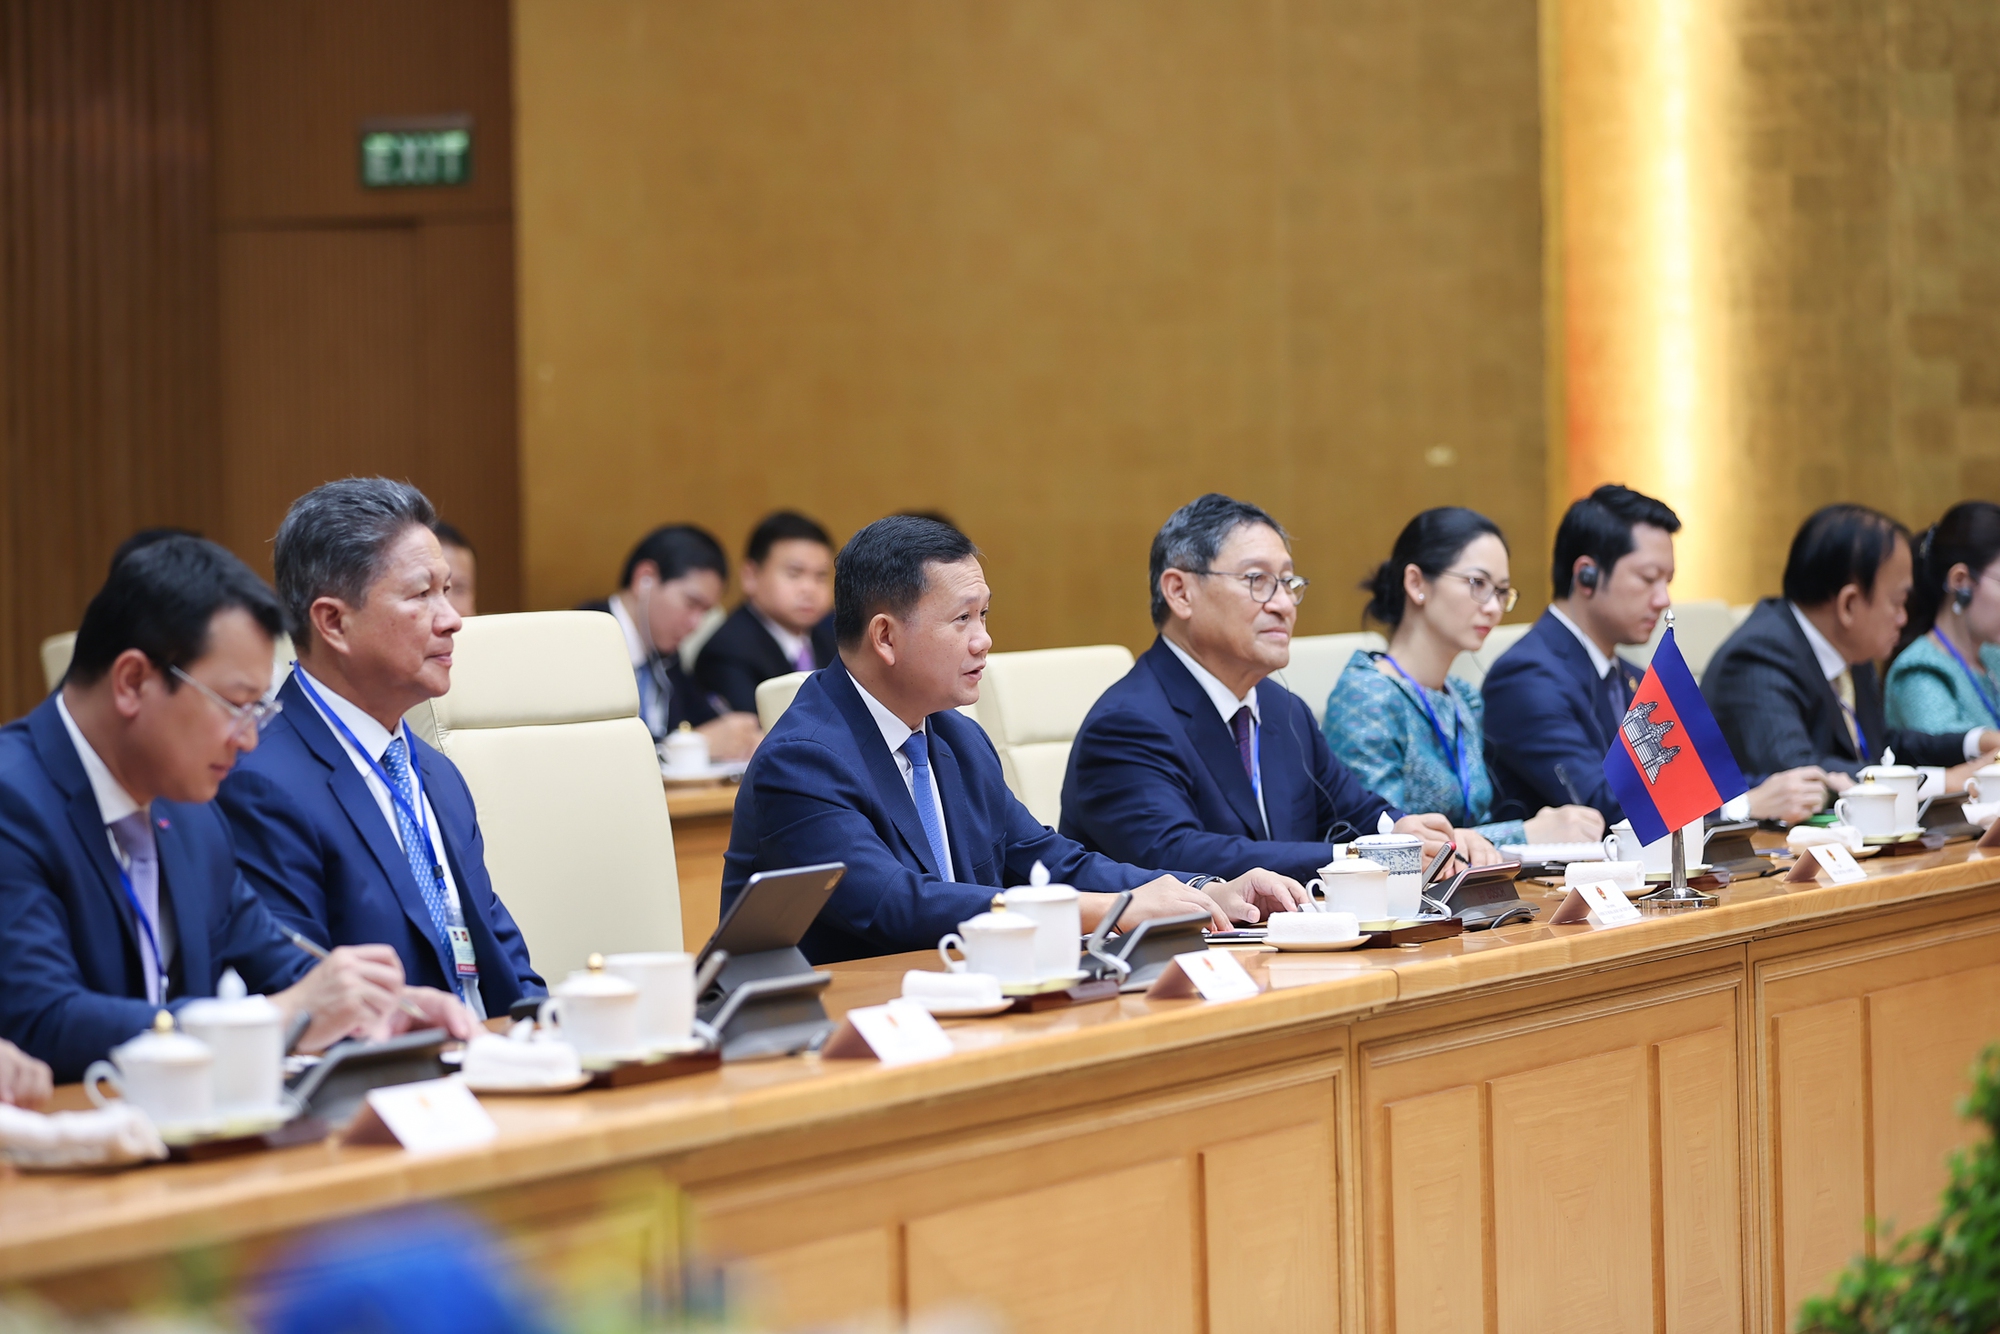 Samdech Thipadei Thủ tướng Hun Manet khẳng định chuyến thăm chính thức Việt Nam lần này nhằm kế thừa truyền thống tốt đẹp và tiếp tục thúc đẩy mối quan hệ đoàn kết hữu nghị truyền thống và hợp tác toàn diện giữa hai nước lên tầm cao mới - Ảnh: VGP/Nhật Bắc